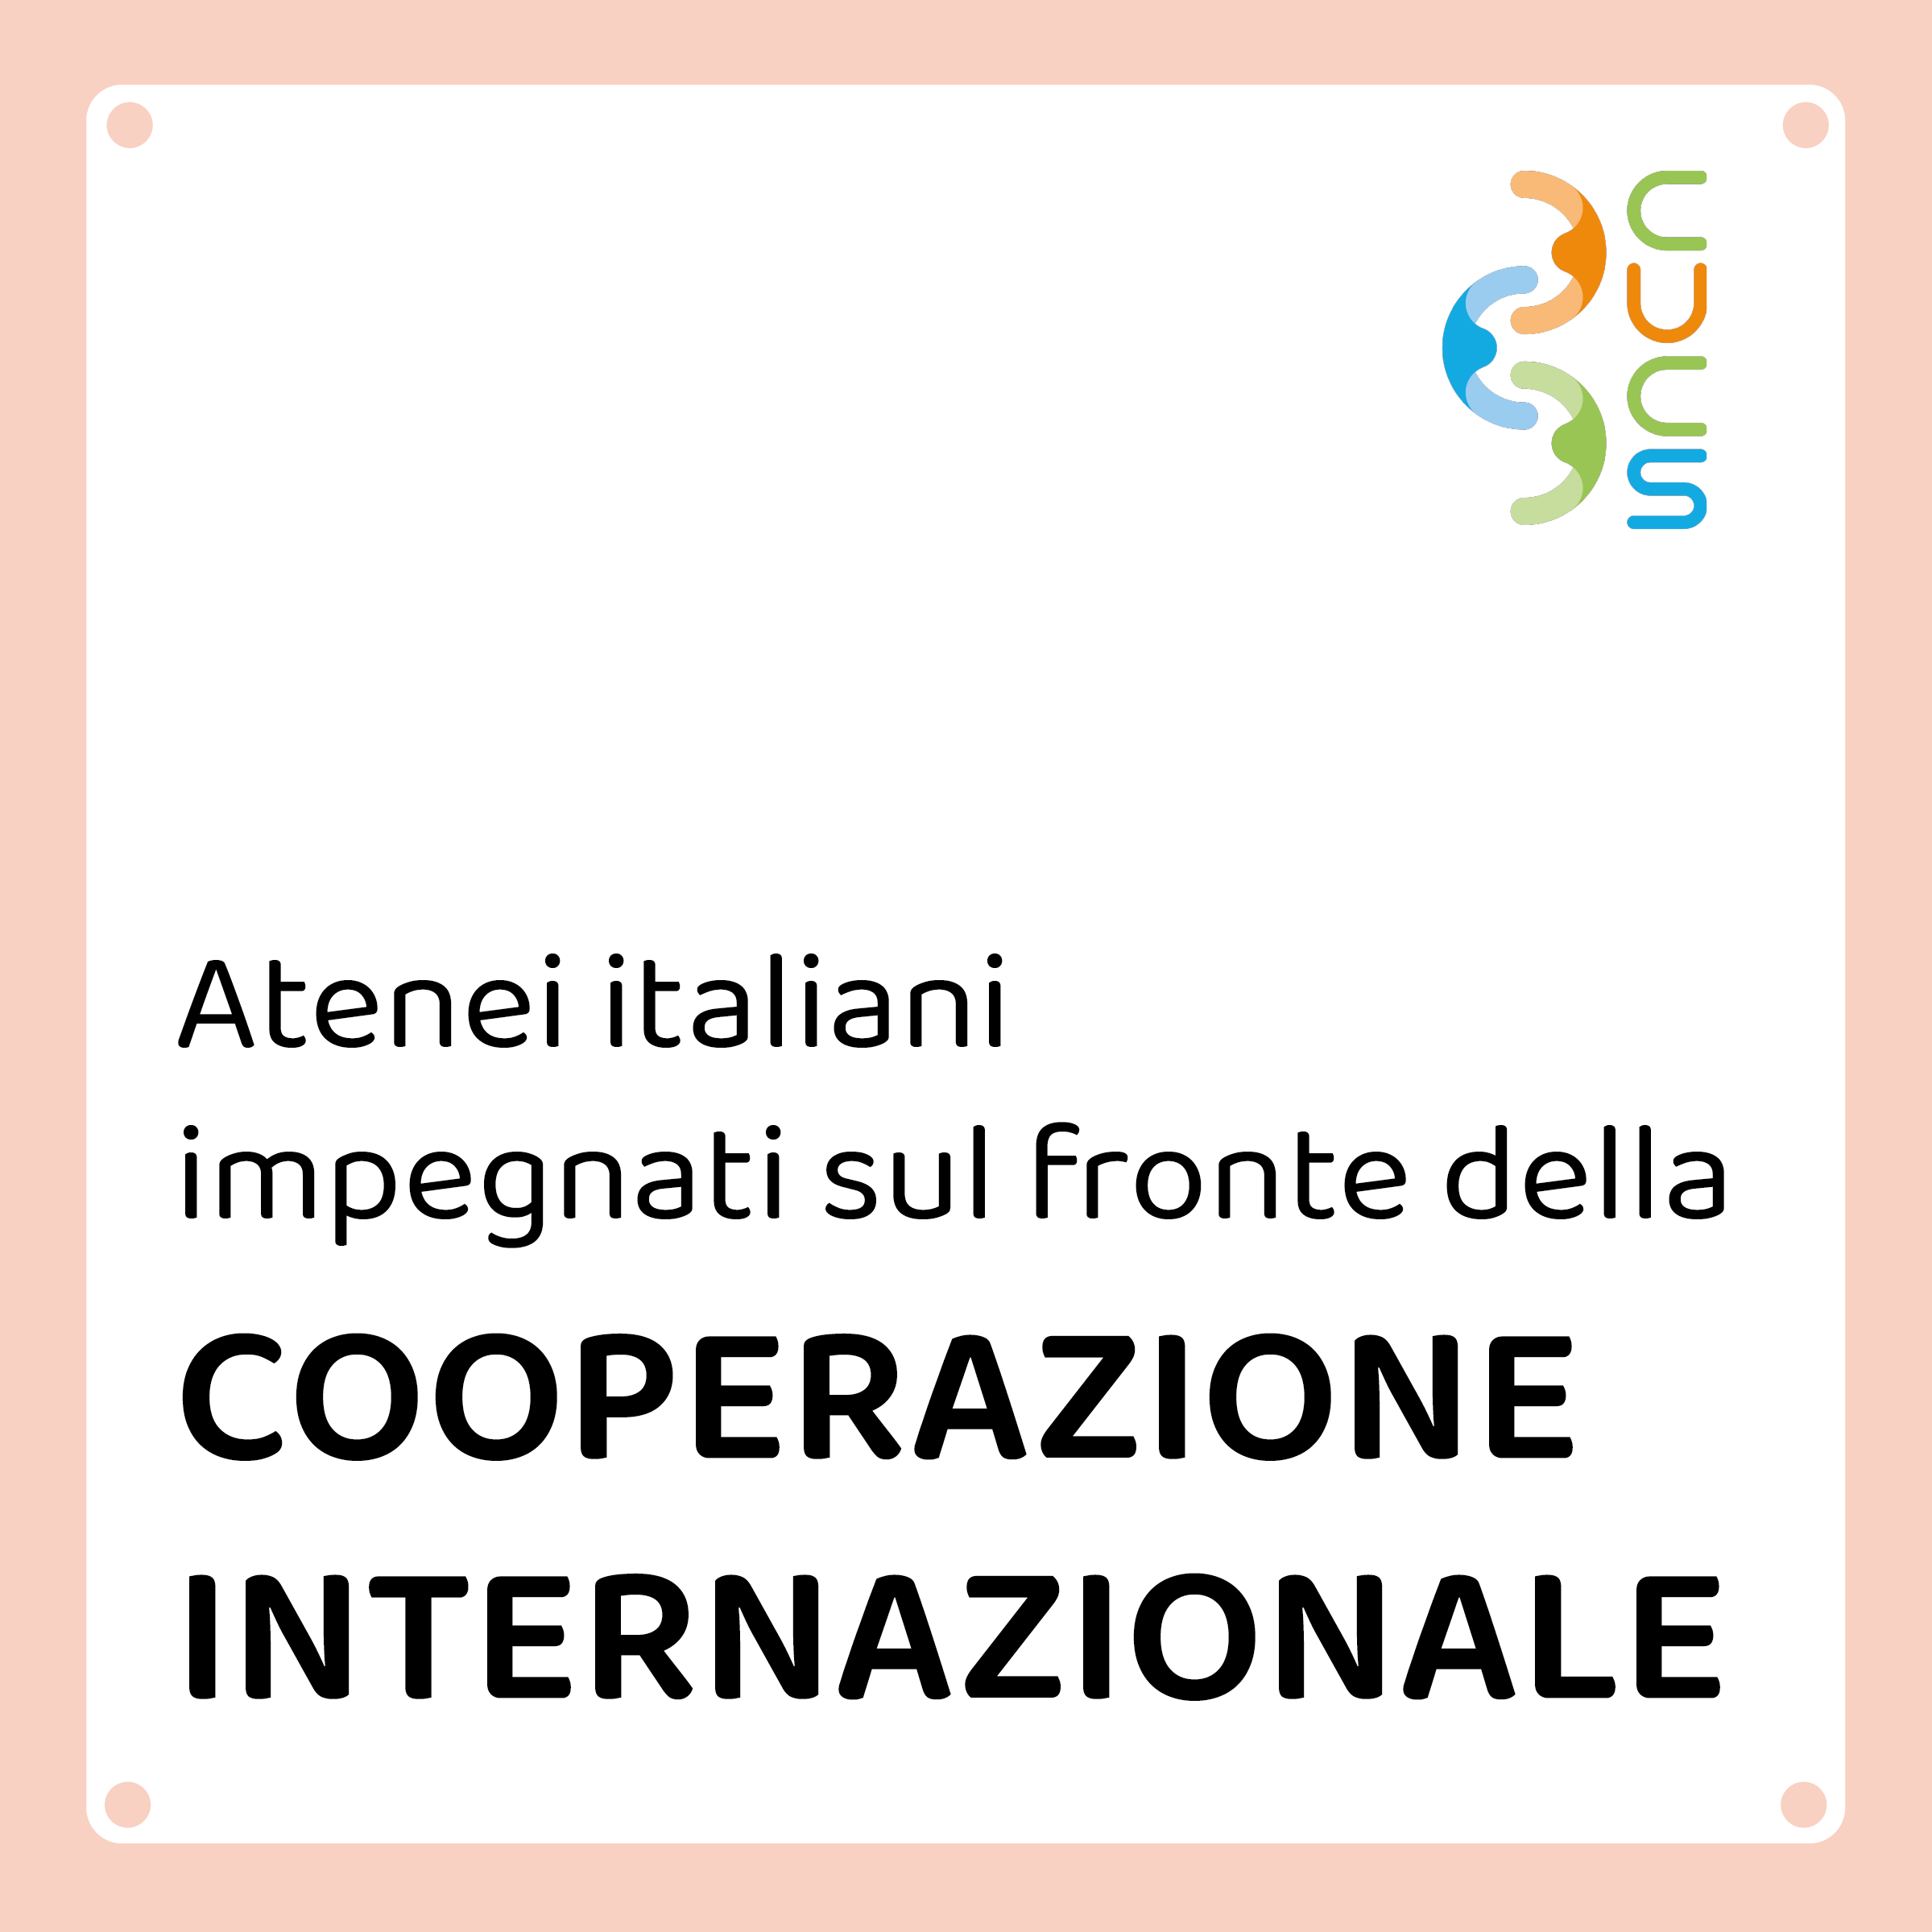 Atenei italiani impegnati sul fronte della cooperazione internazionale allo sviluppo